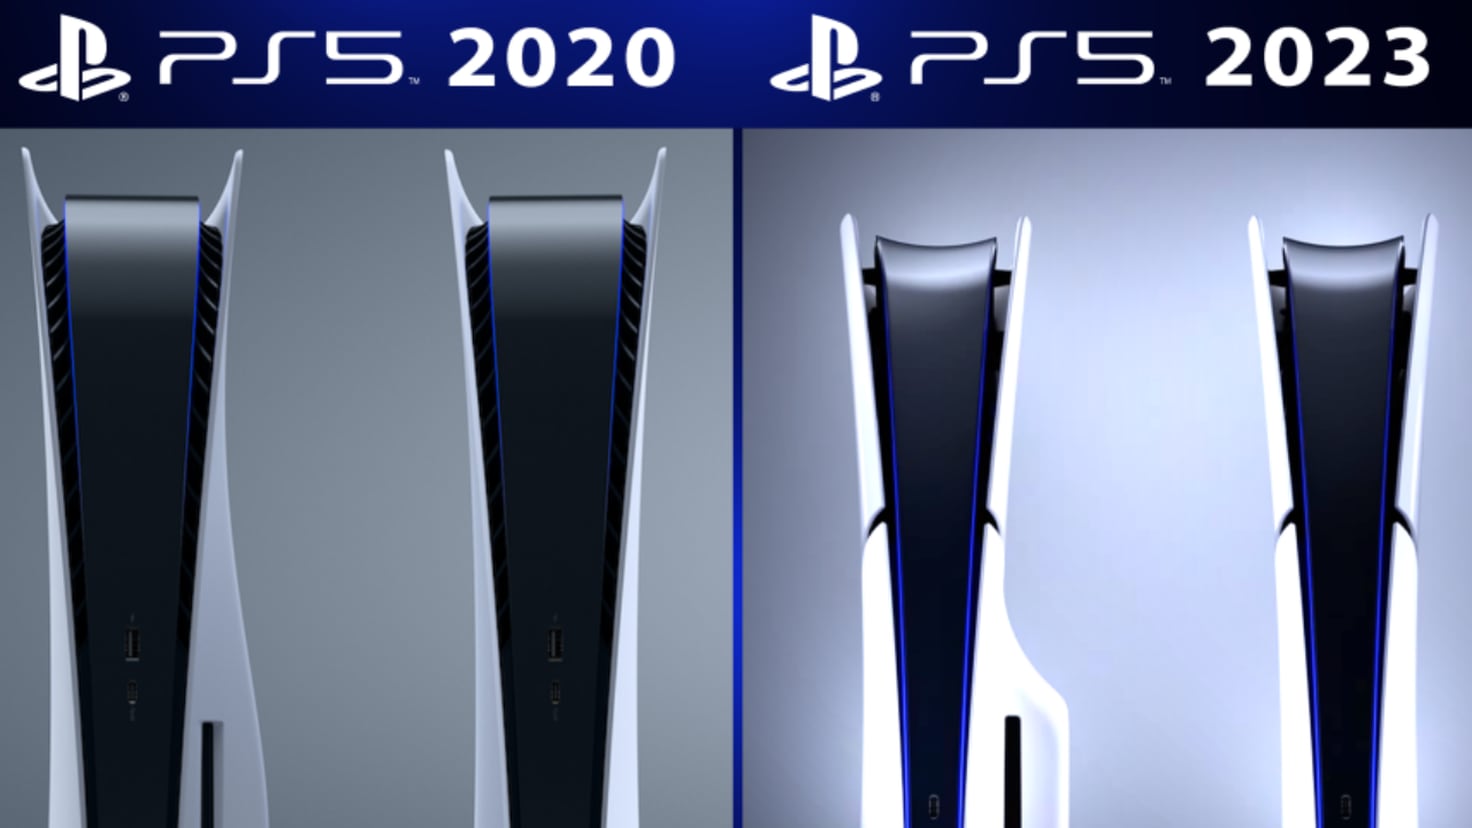 PS5 Slim: Precio, características y fecha de lanzamiento - La Opinión